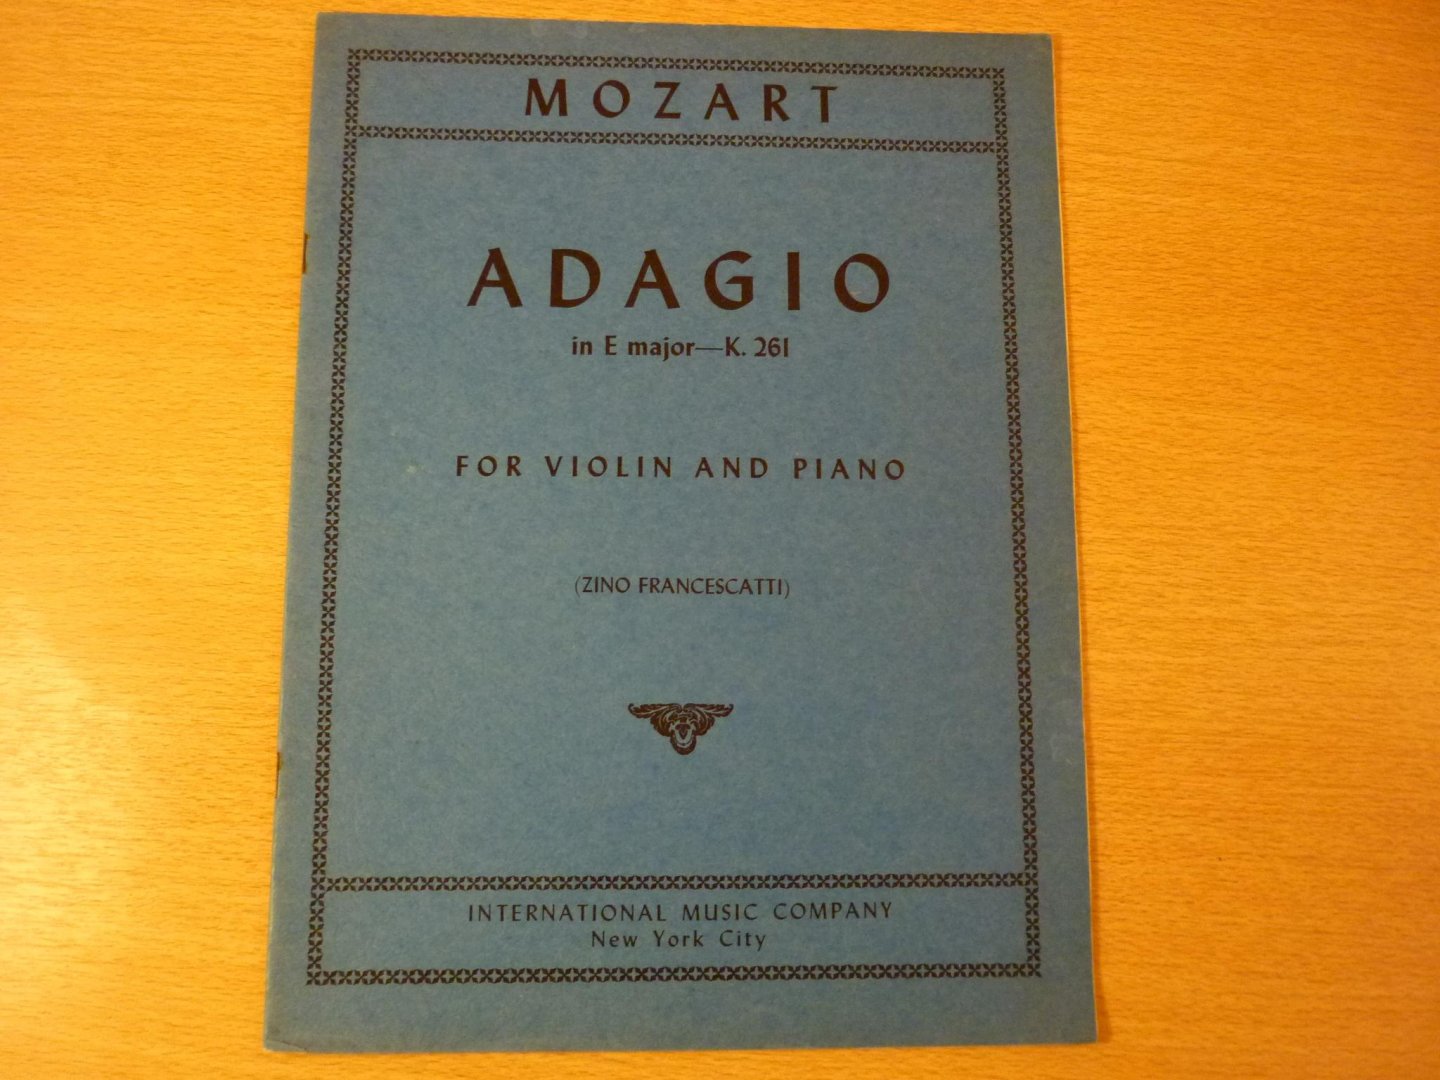 Mozart. W.A. (1756 – 1791) - Adagio in E major - K. 261; for Violin and Piano (Zino Francescatti)